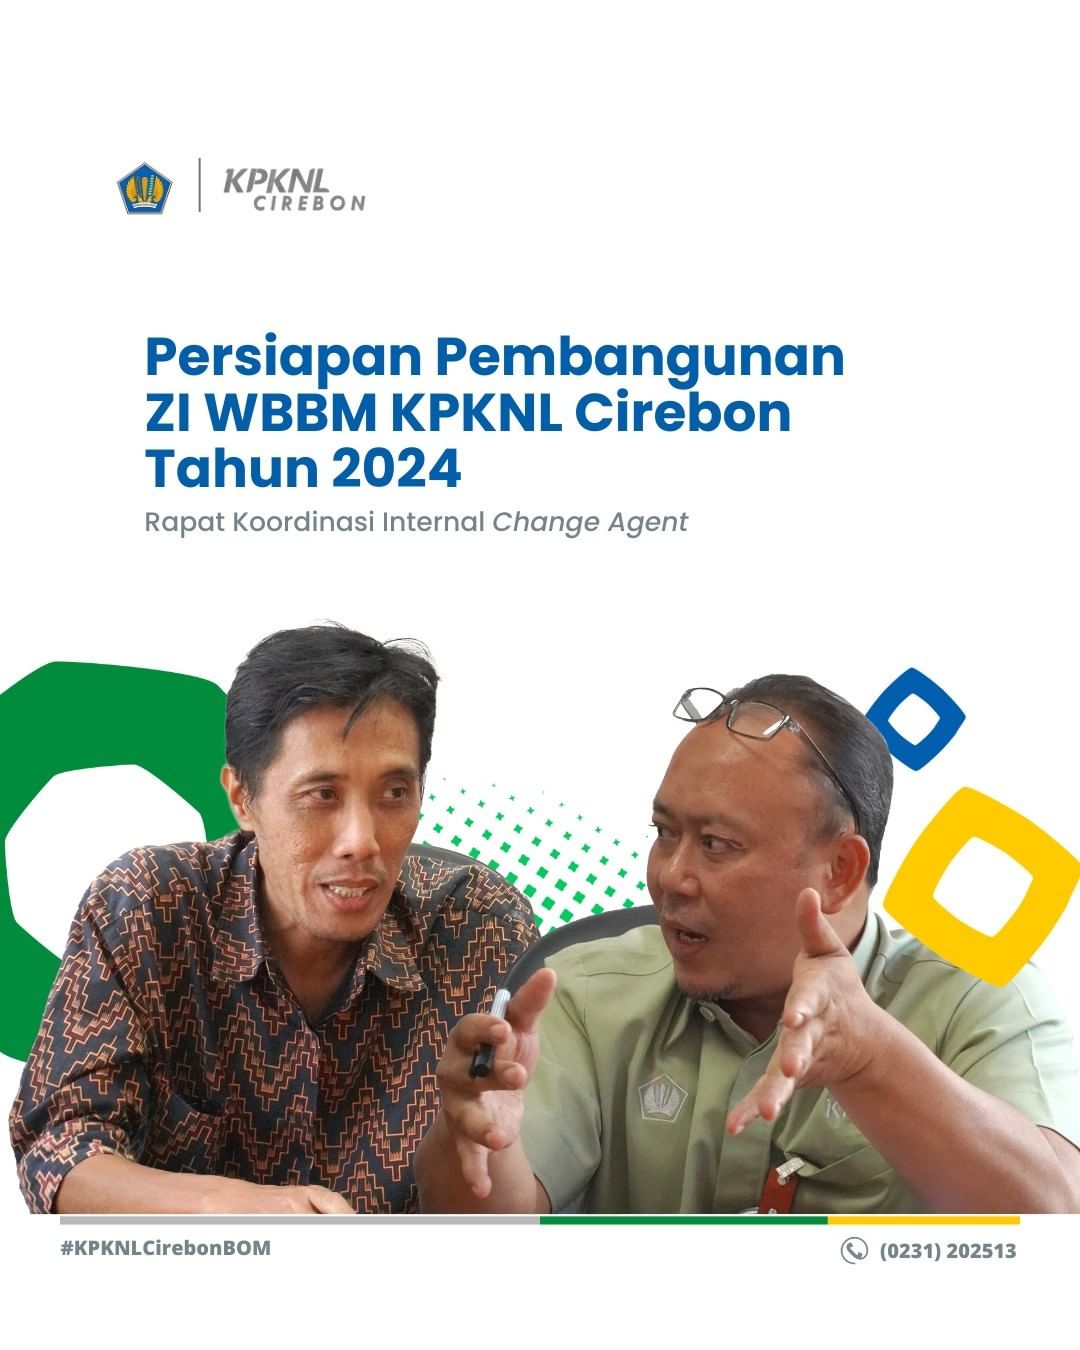 Rapat Koordinasi Internal Change Agent Dalam Rangka Persiapan Pembangunan ZI WBBM KPKNL Cirebon Tahun 2024